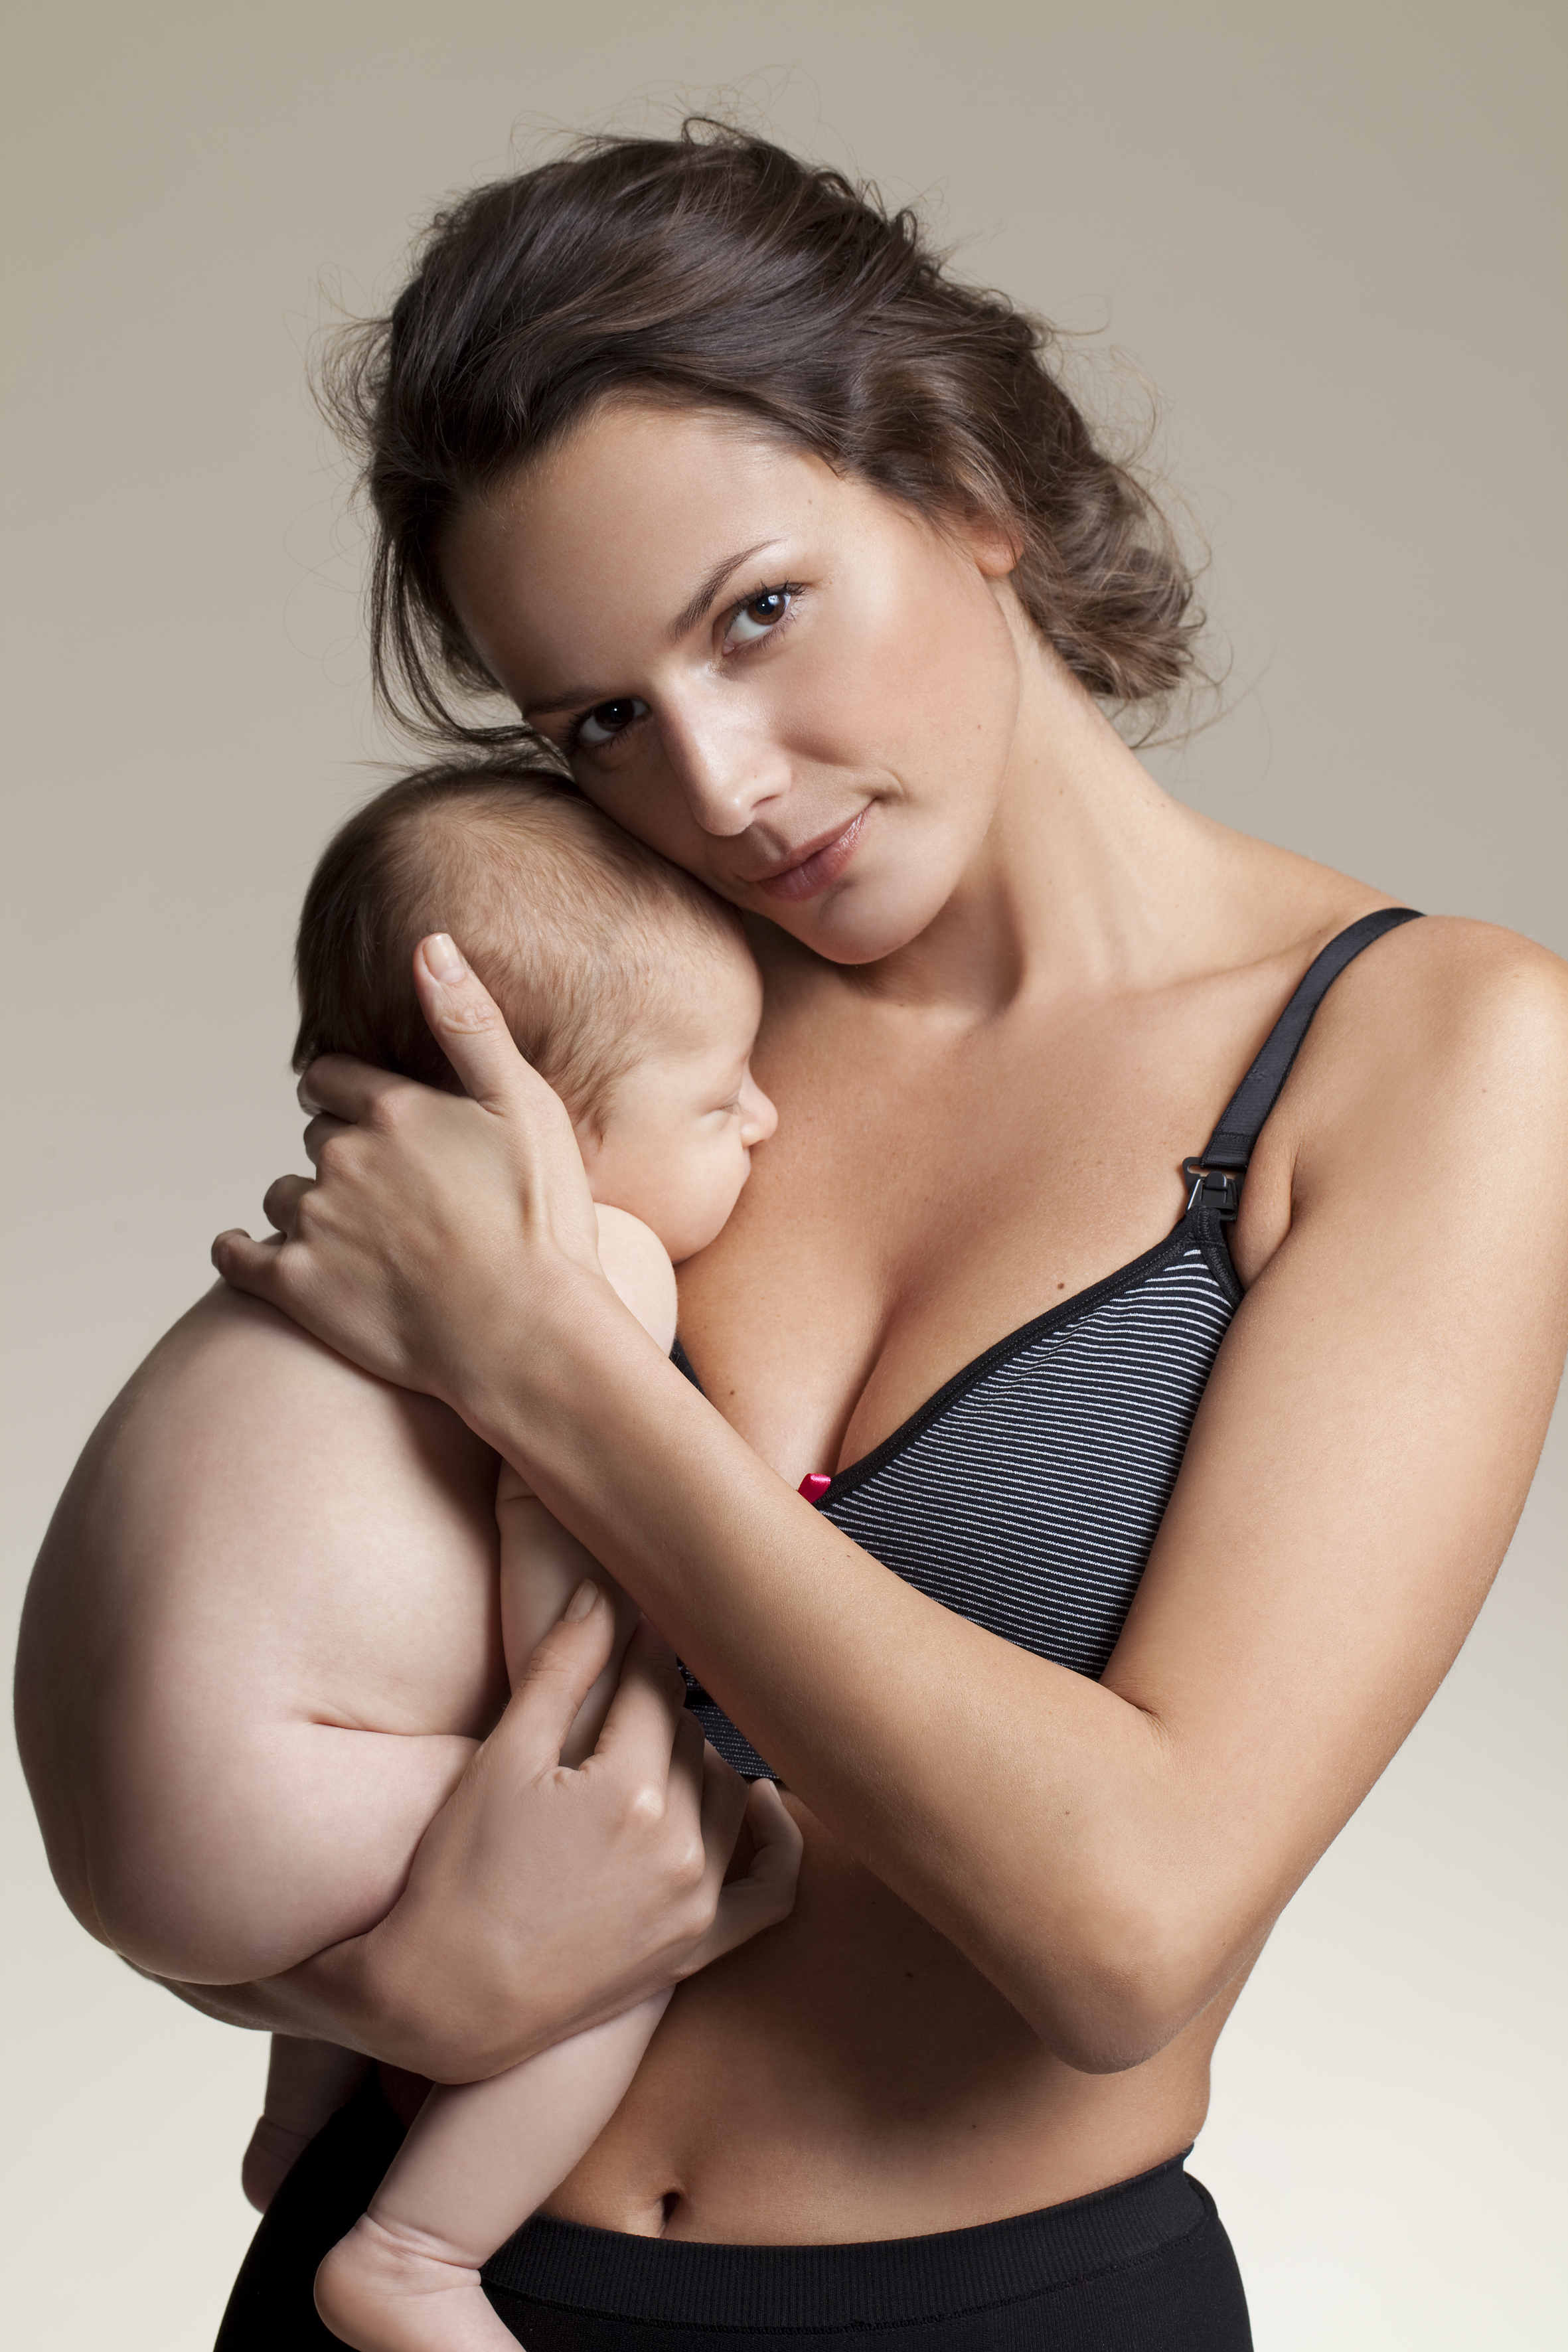 голая женщина кормит грудью ребенка фото фото 81